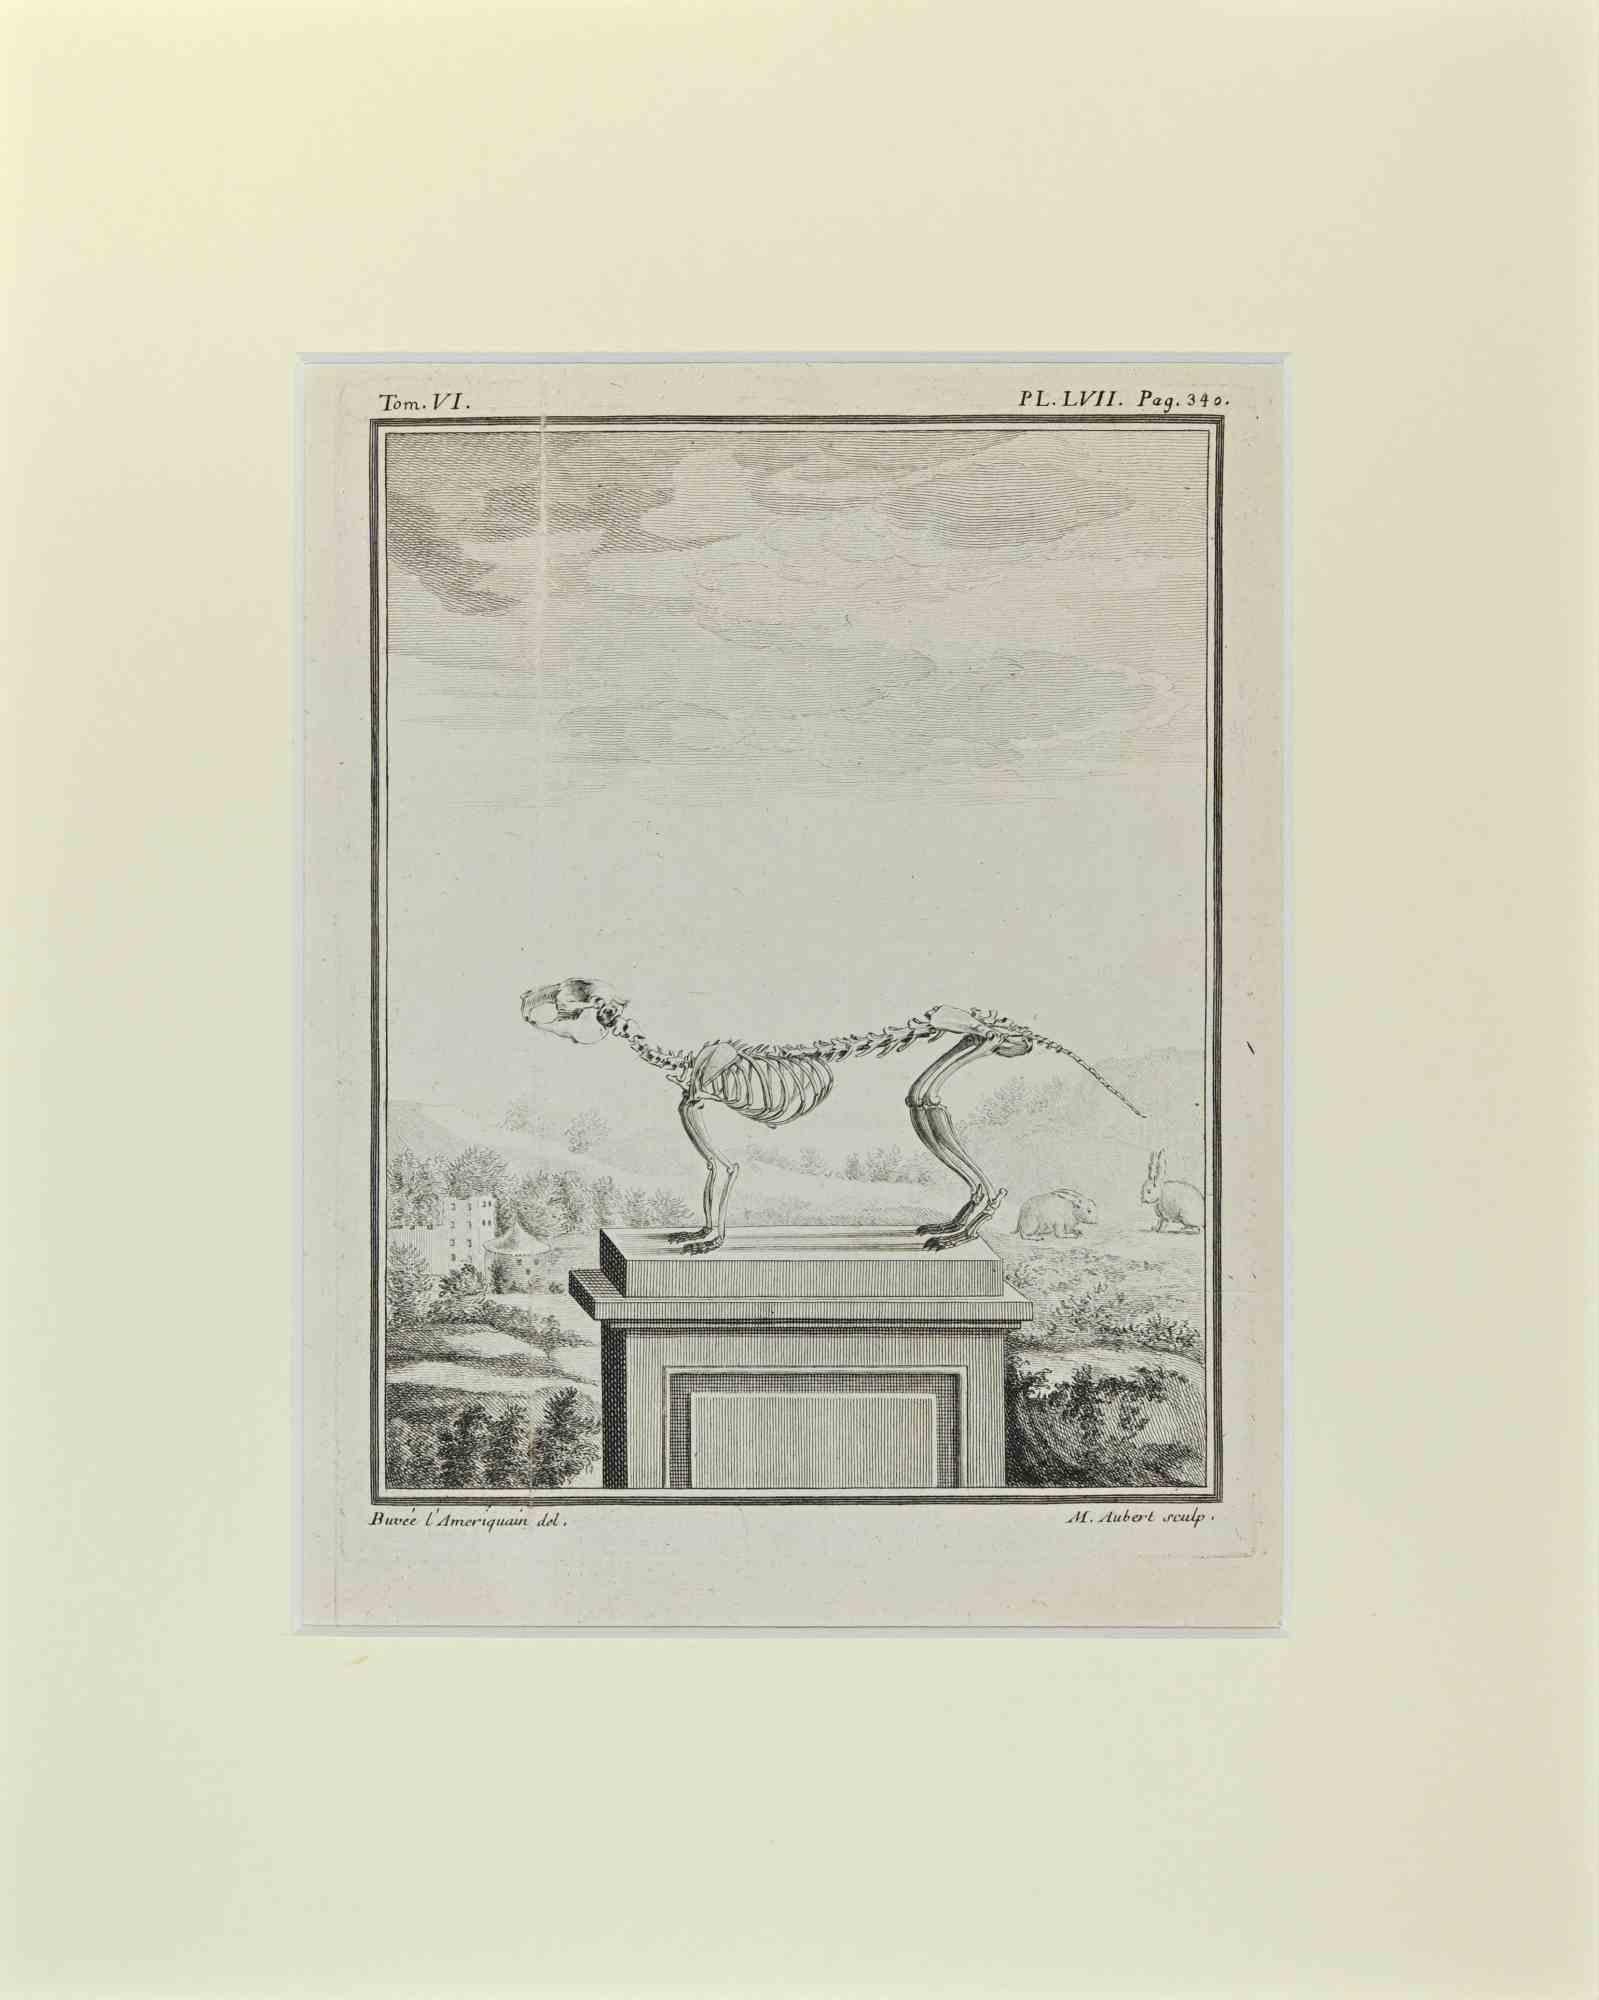 Skeleton Quadrupedes - Etching by Buvée l'Américain - 1771